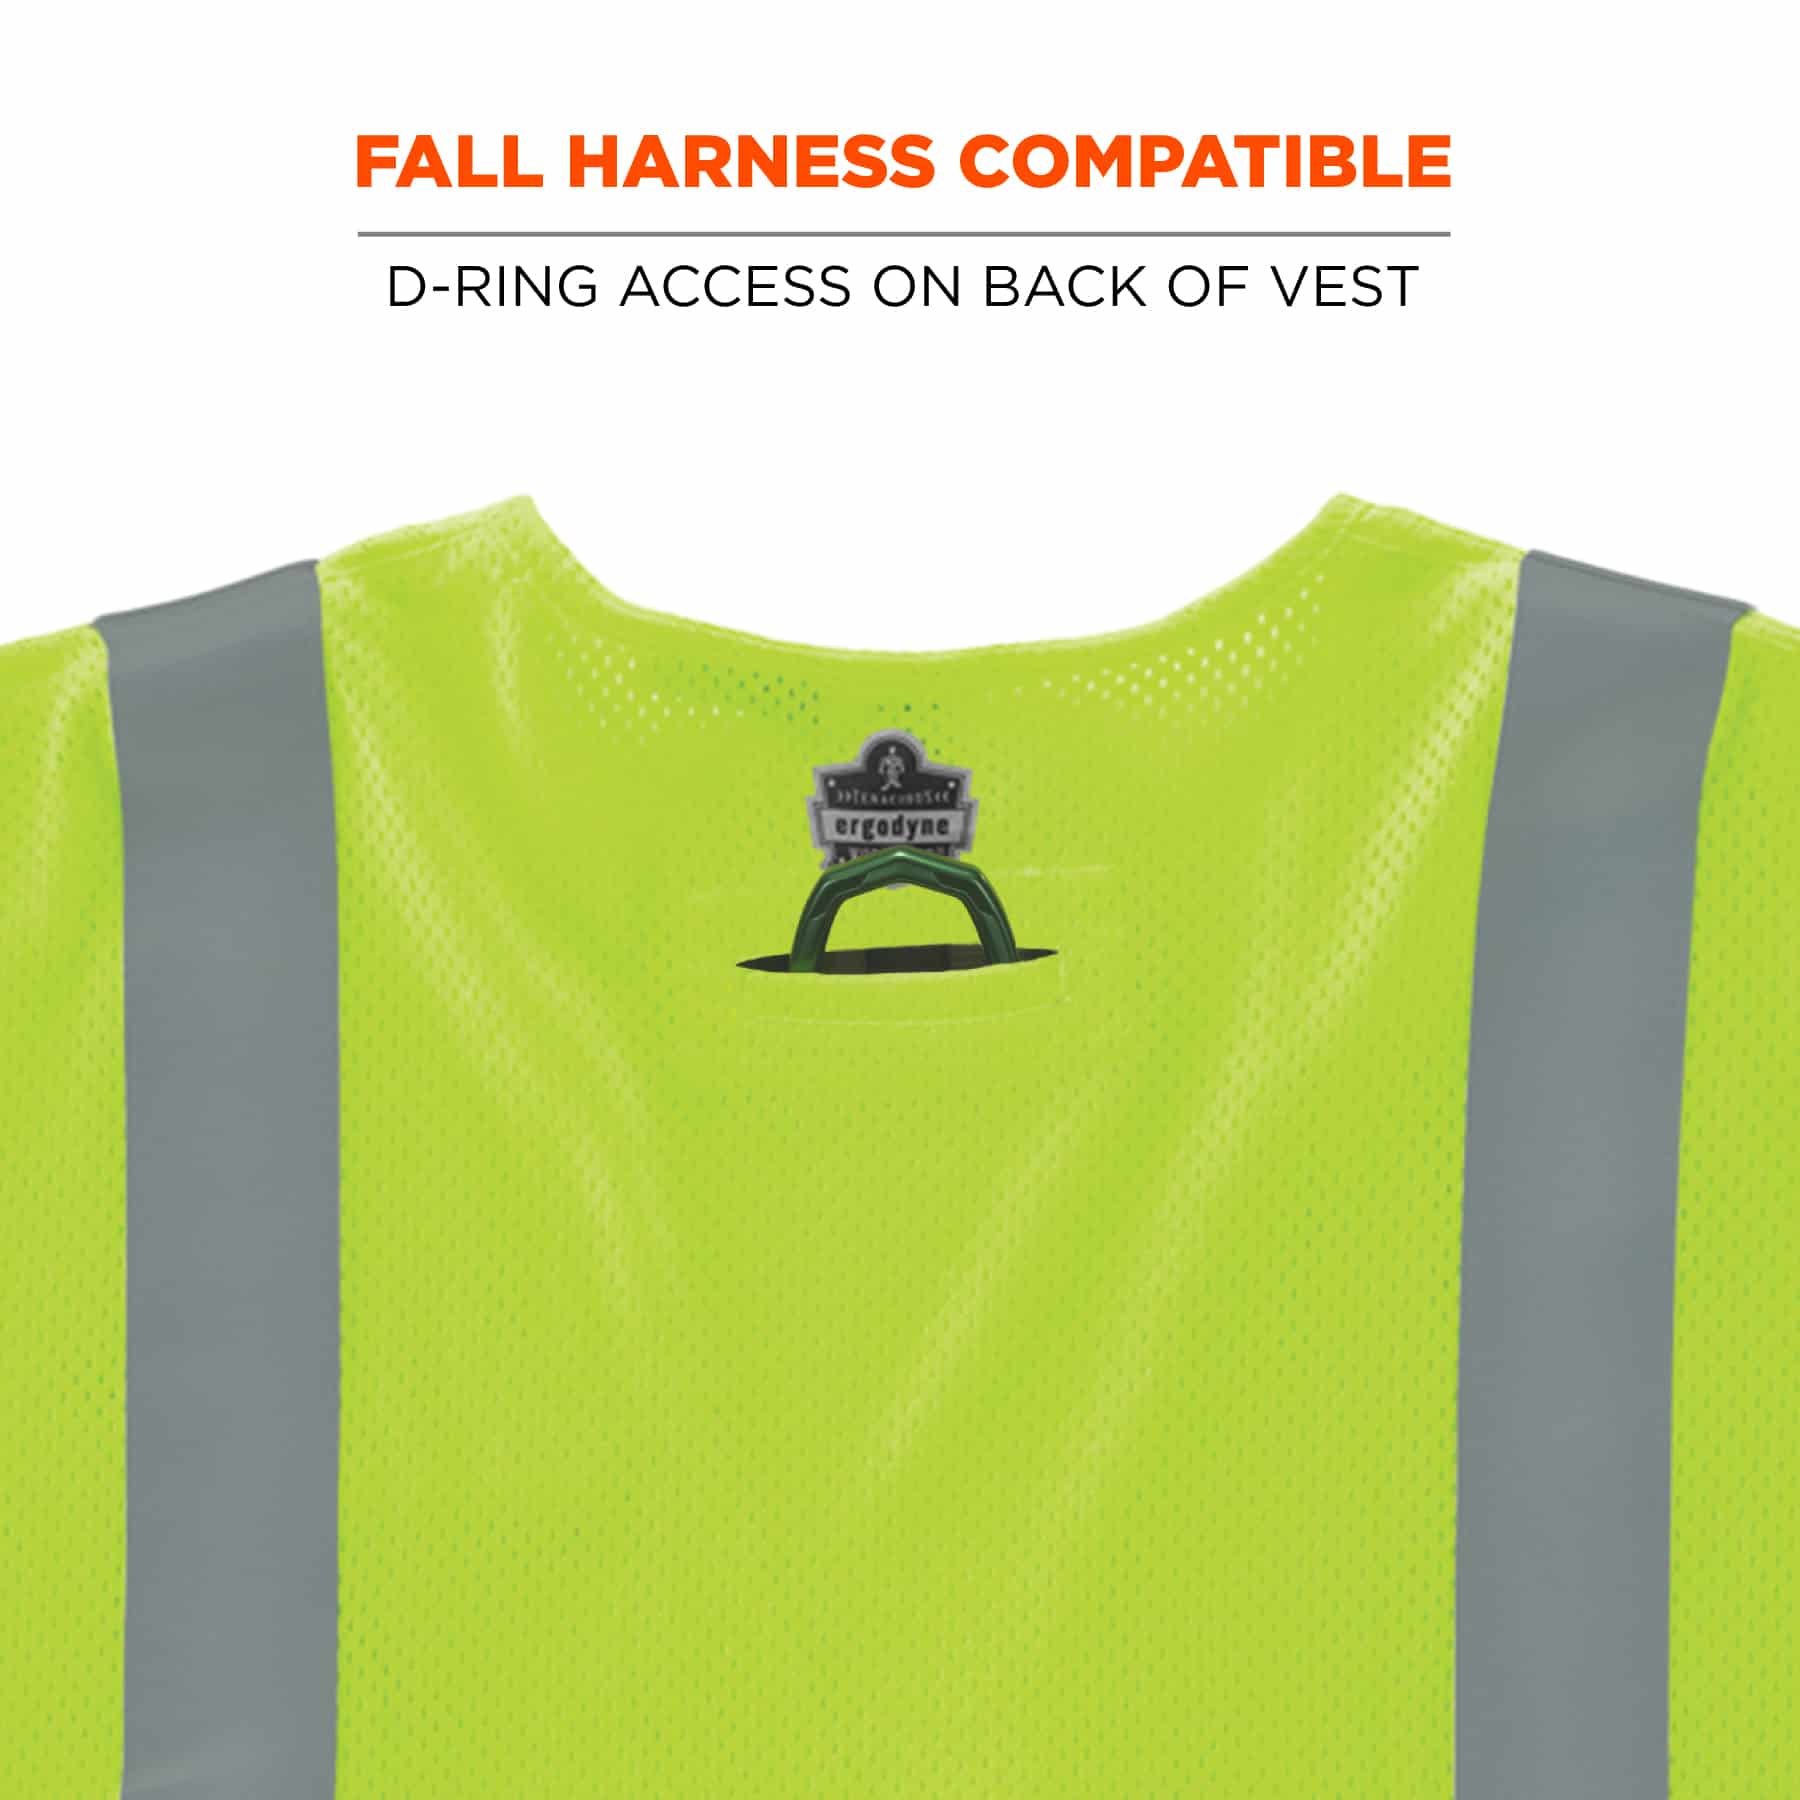 https://www.ergodyne.com/sites/default/files/product-images/22213-8356frhl-hi-vis-fr-safety-vest-fall-harness-compatible.jpg